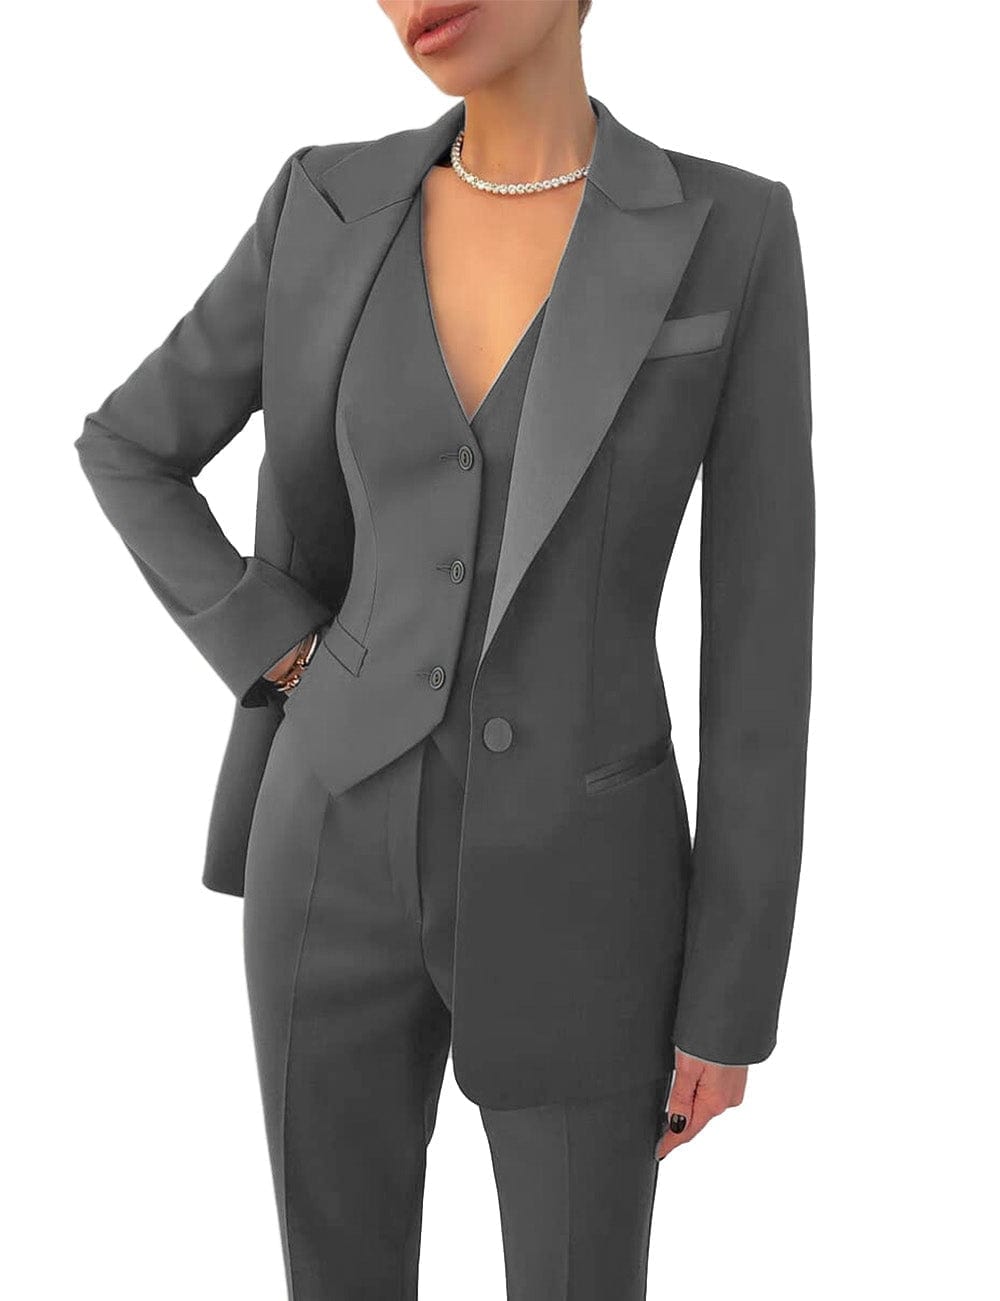 solovedress Women's Business 3 Pieces Slim Fit Solid Color Peak Lapel Suit (Blazer+vest+Pants)